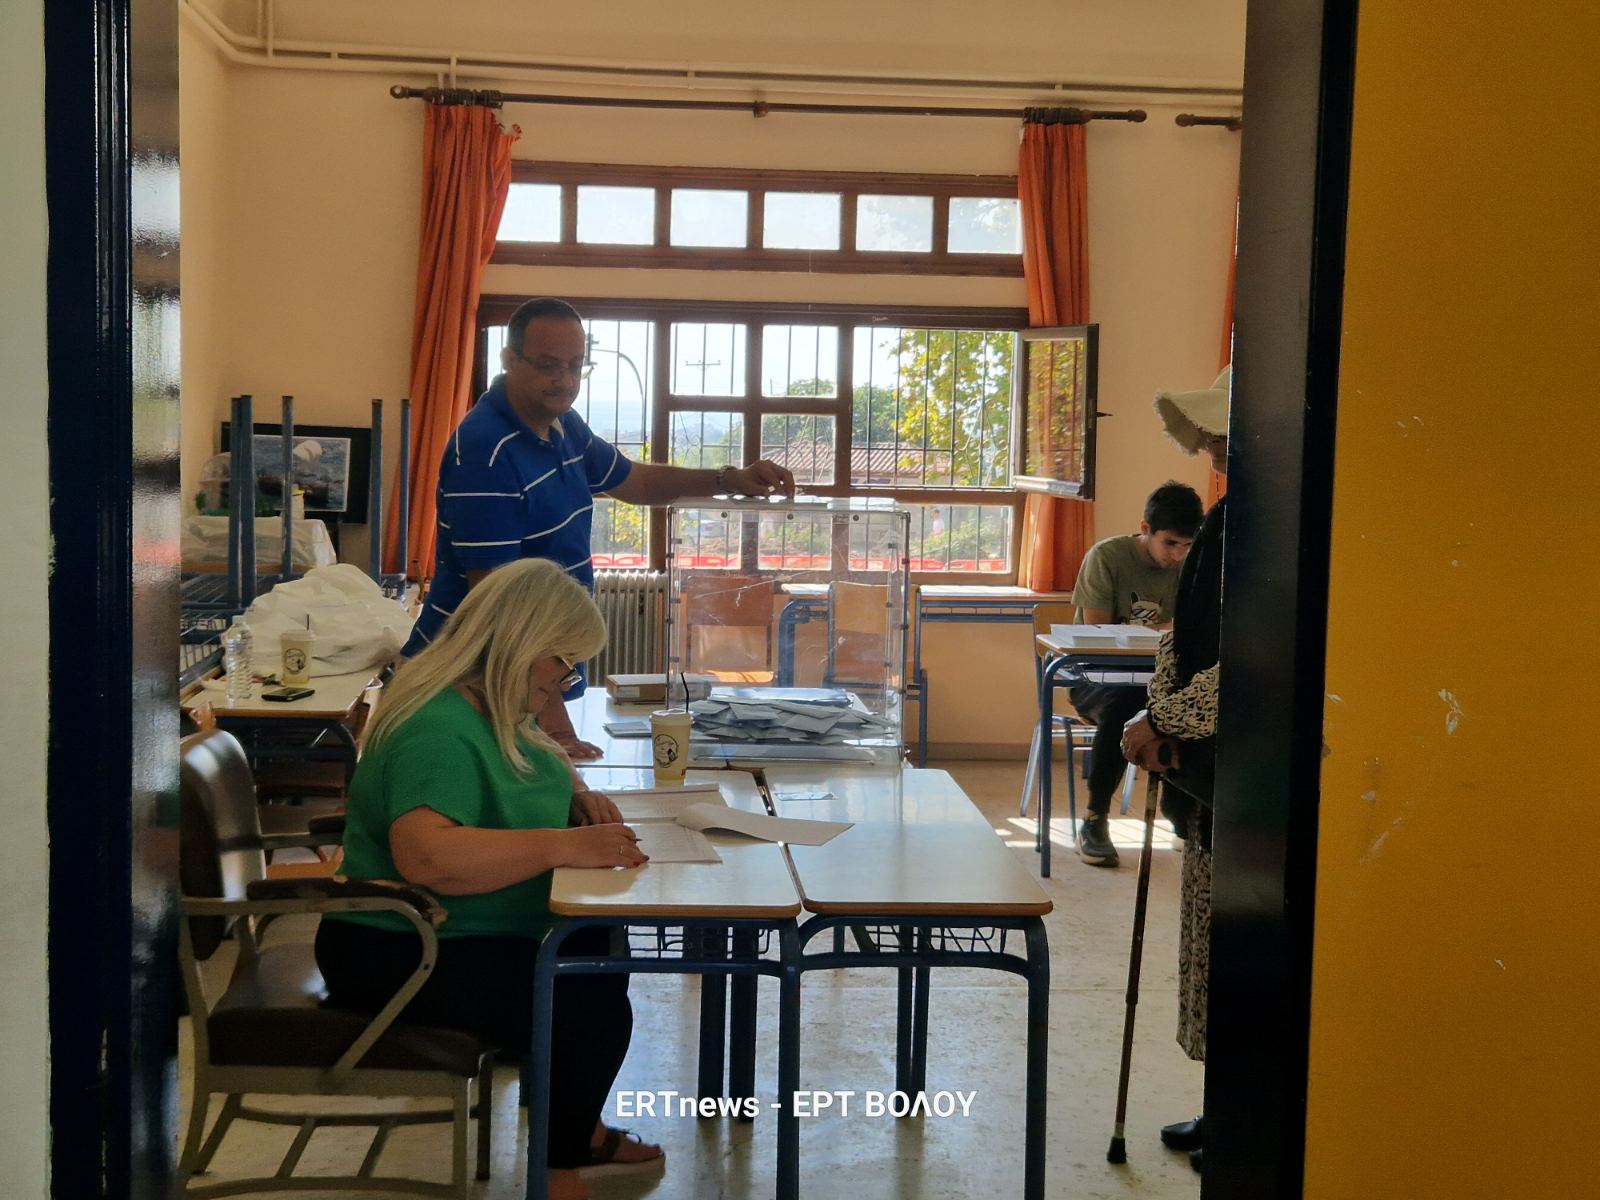 Μαγνησία: Ομαλά η διεξαγωγή της ψηφοφορίας – Μικρή η συμμετοχή